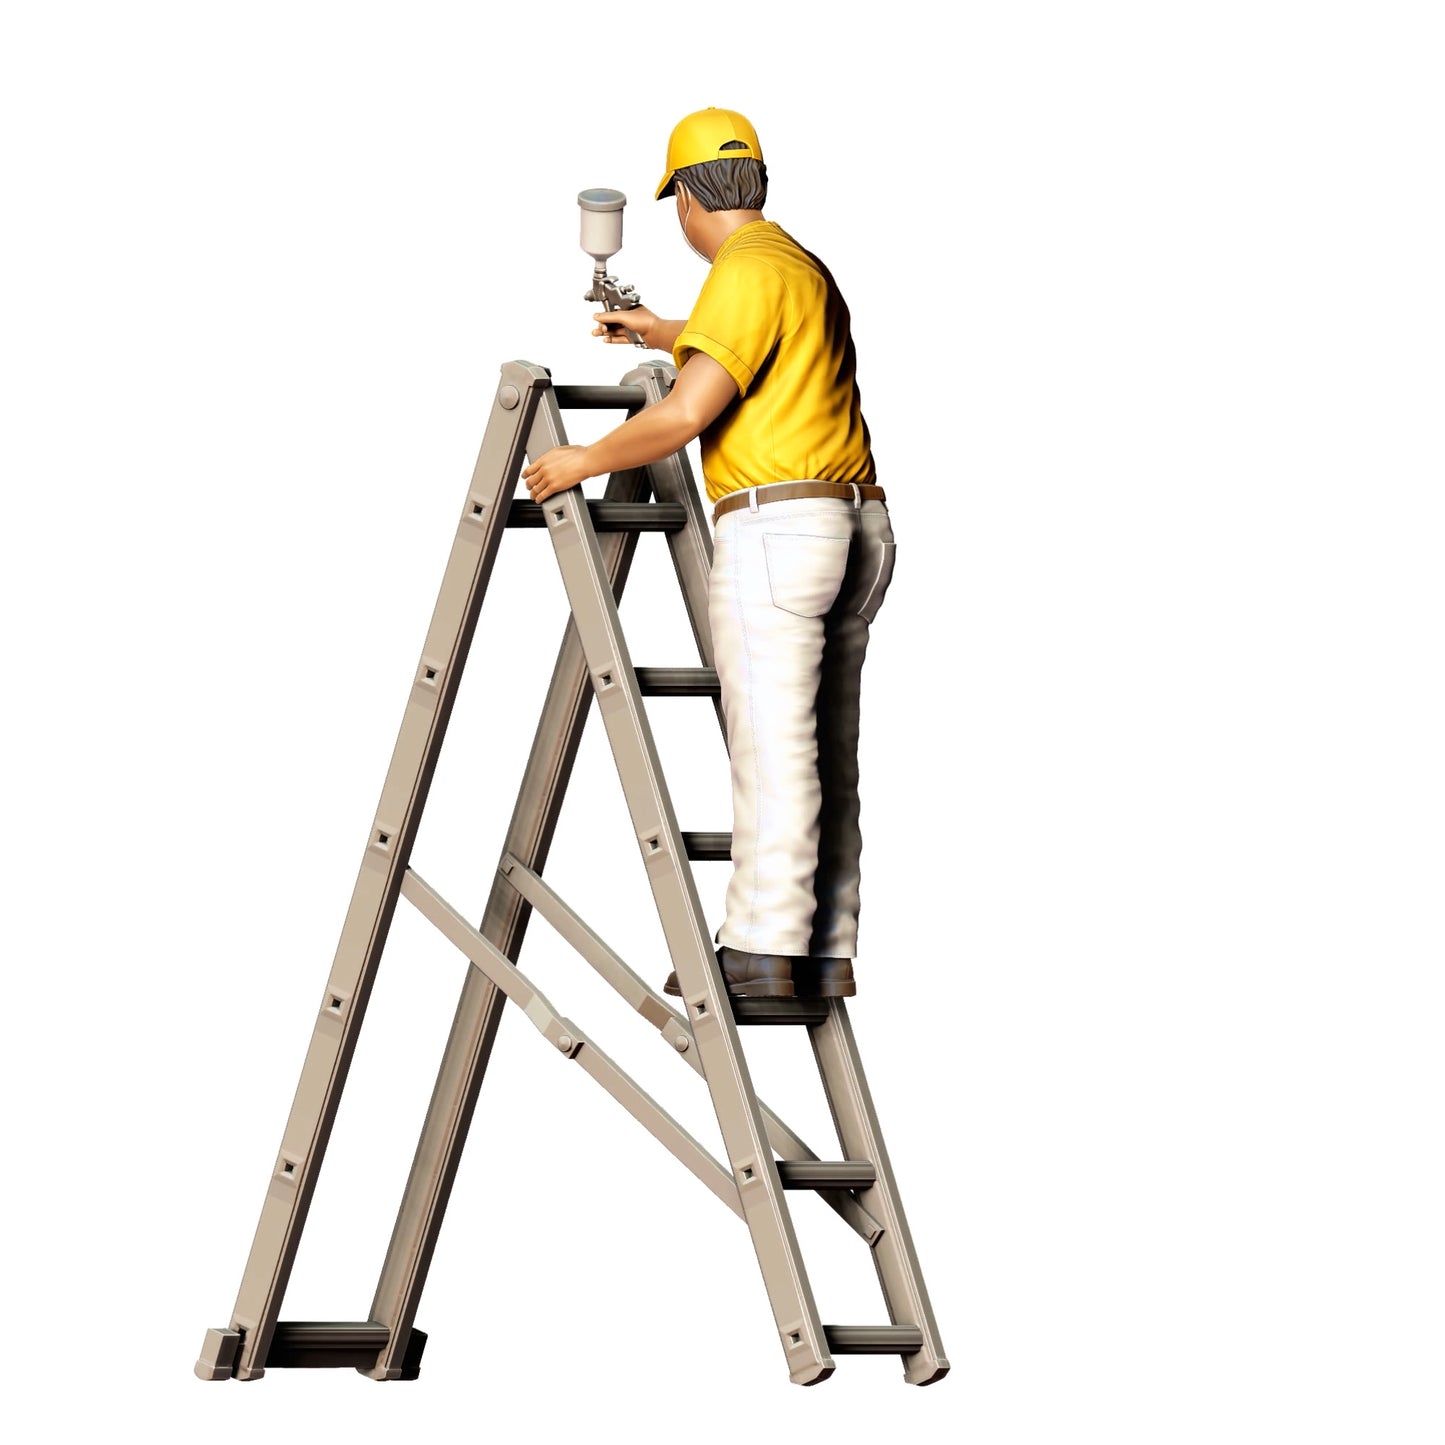 Produktfoto  0: Maler/ Lackierer mit Spraypistole - Handwerker auf Leiter